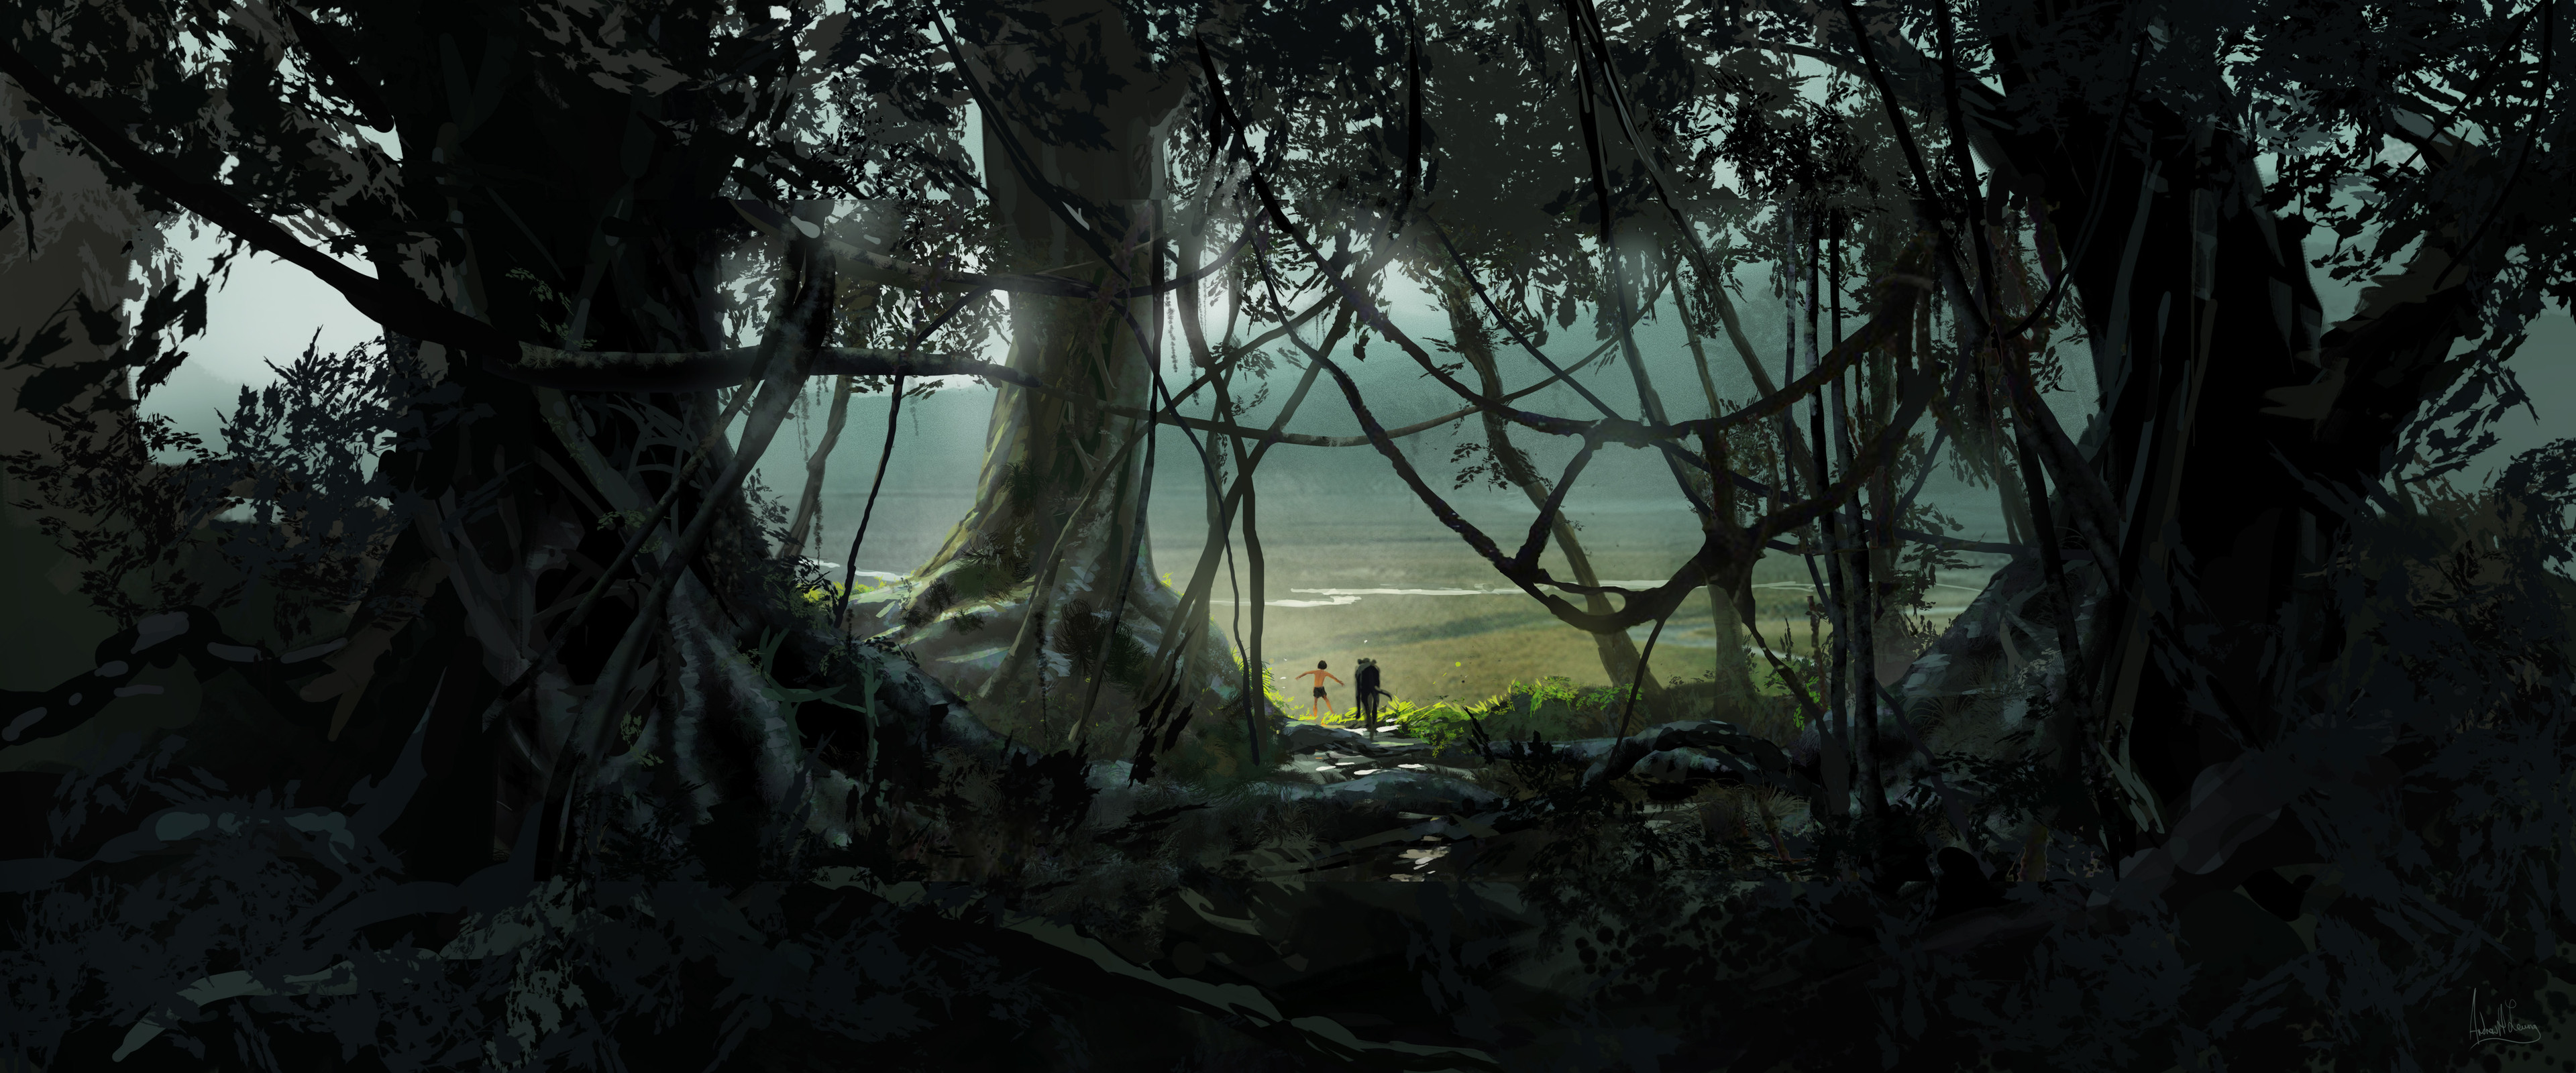 Le Livre de la Jungle [Disney - 2016] - Page 15 Andrew-leung-moglieedgeforest-v06-al-140415